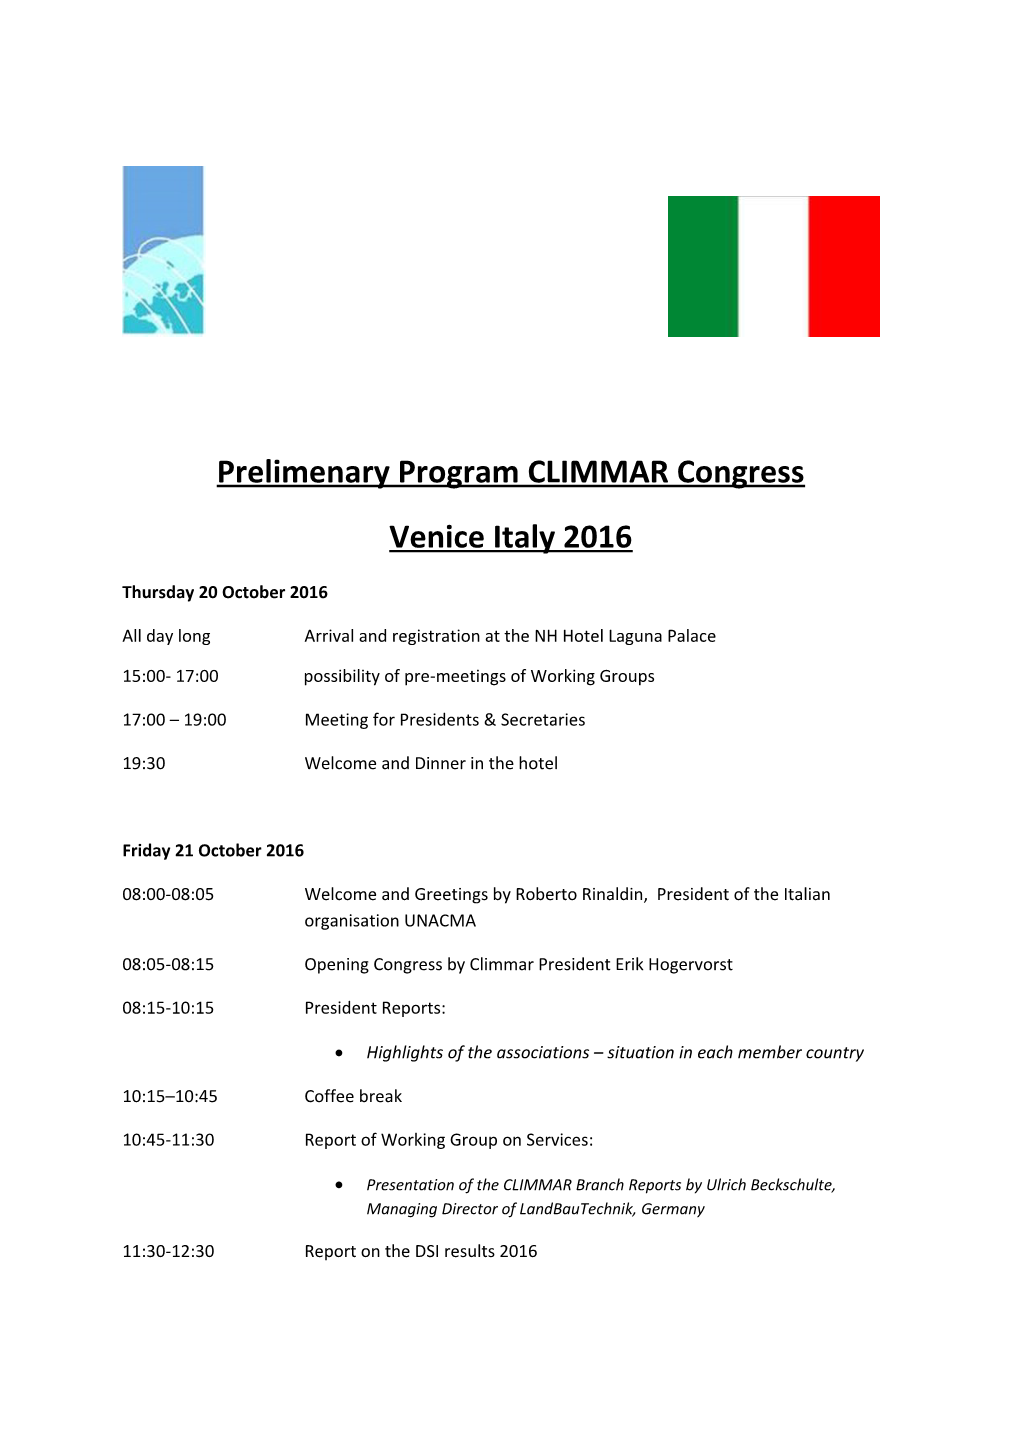 Prelimenaryprogram CLIMMAR Congress